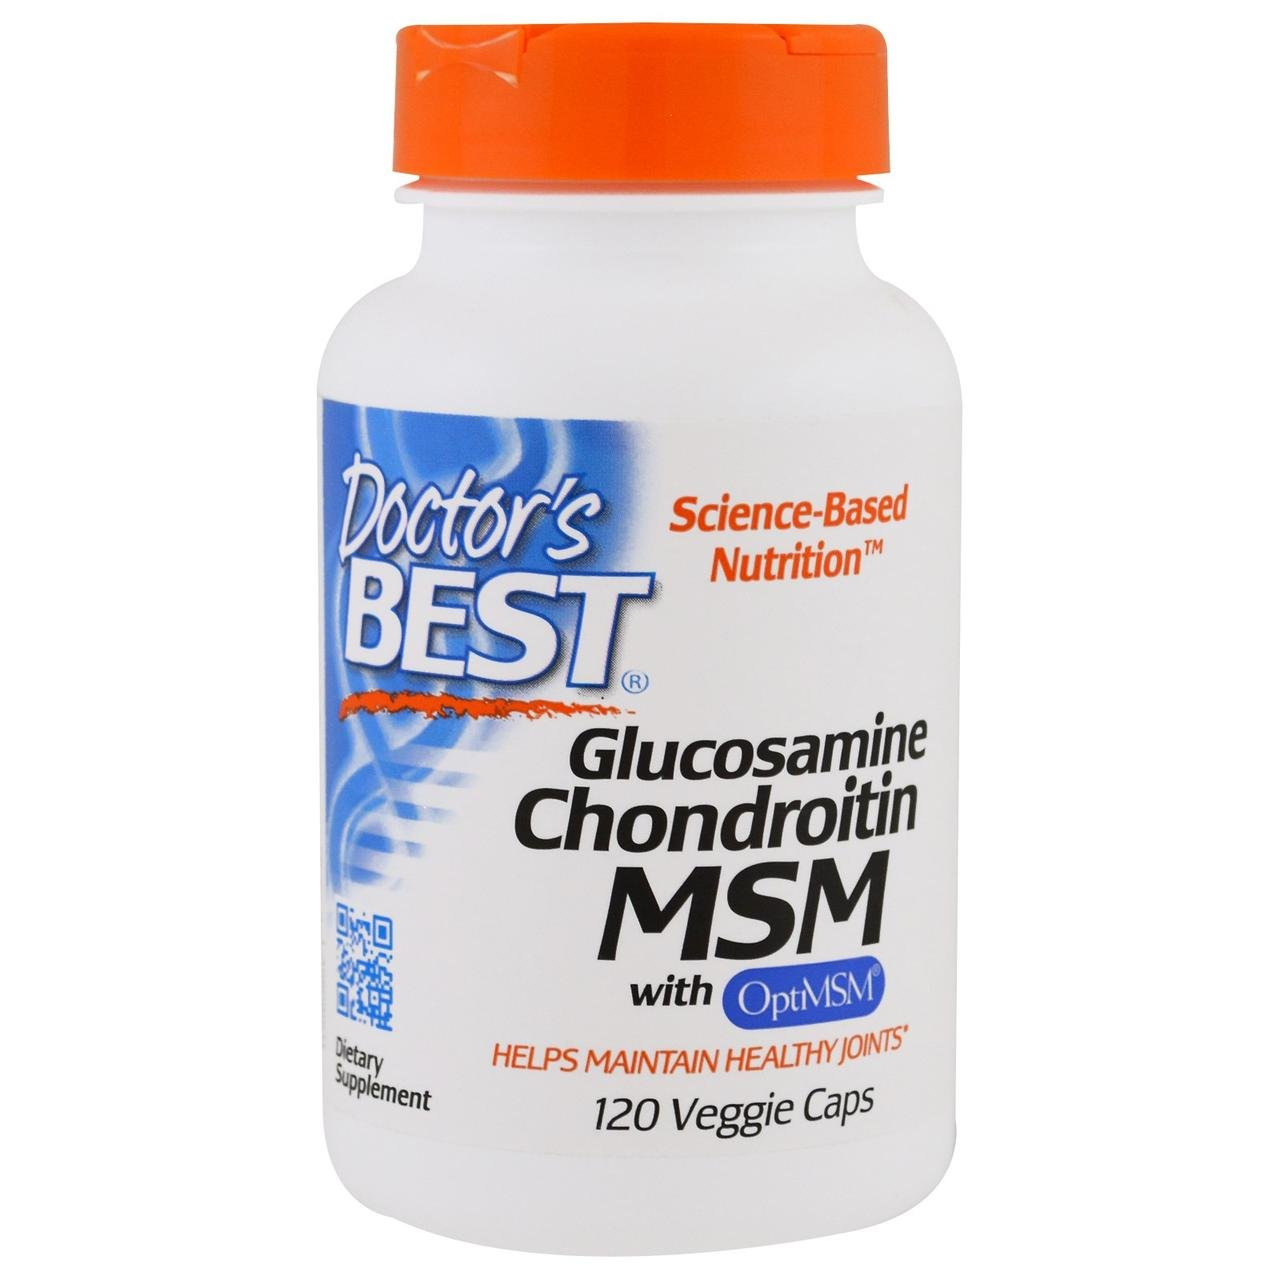 Glucosamine Chondroitin MSM with OptiMSM Doctor's Best 120 VCaps,  мл, Doctor's BEST. Хондропротекторы. Поддержание здоровья Укрепление суставов и связок 